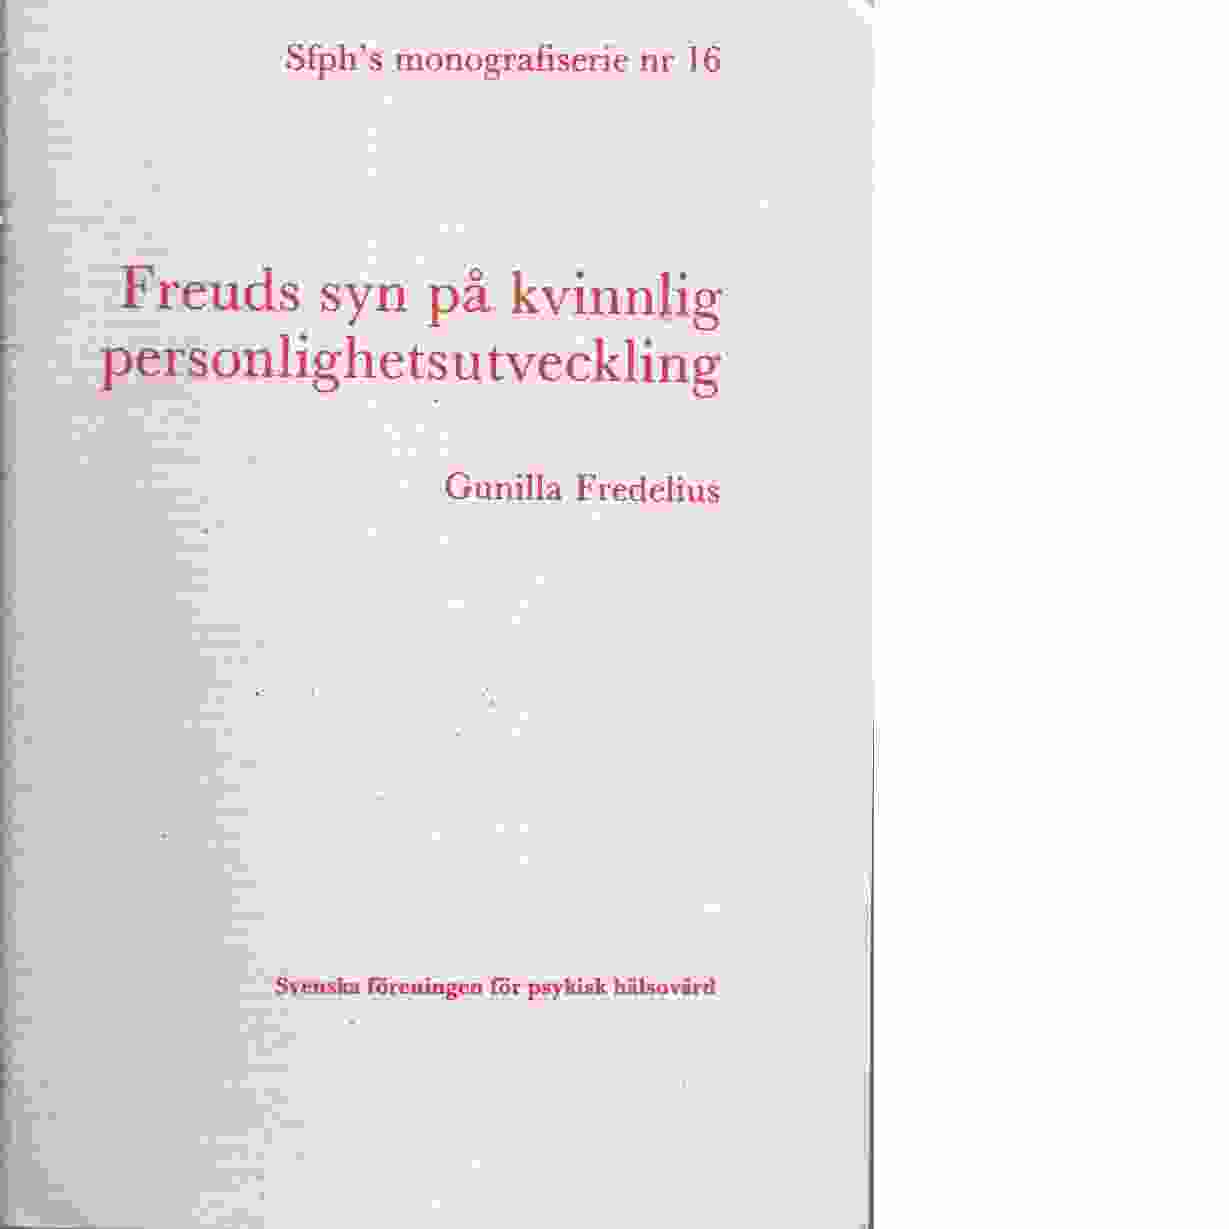 Sfph:s monografiserie / Svenska föreningen för psykisk hälsa - Red. Svenska föreningen för psykisk hälsa